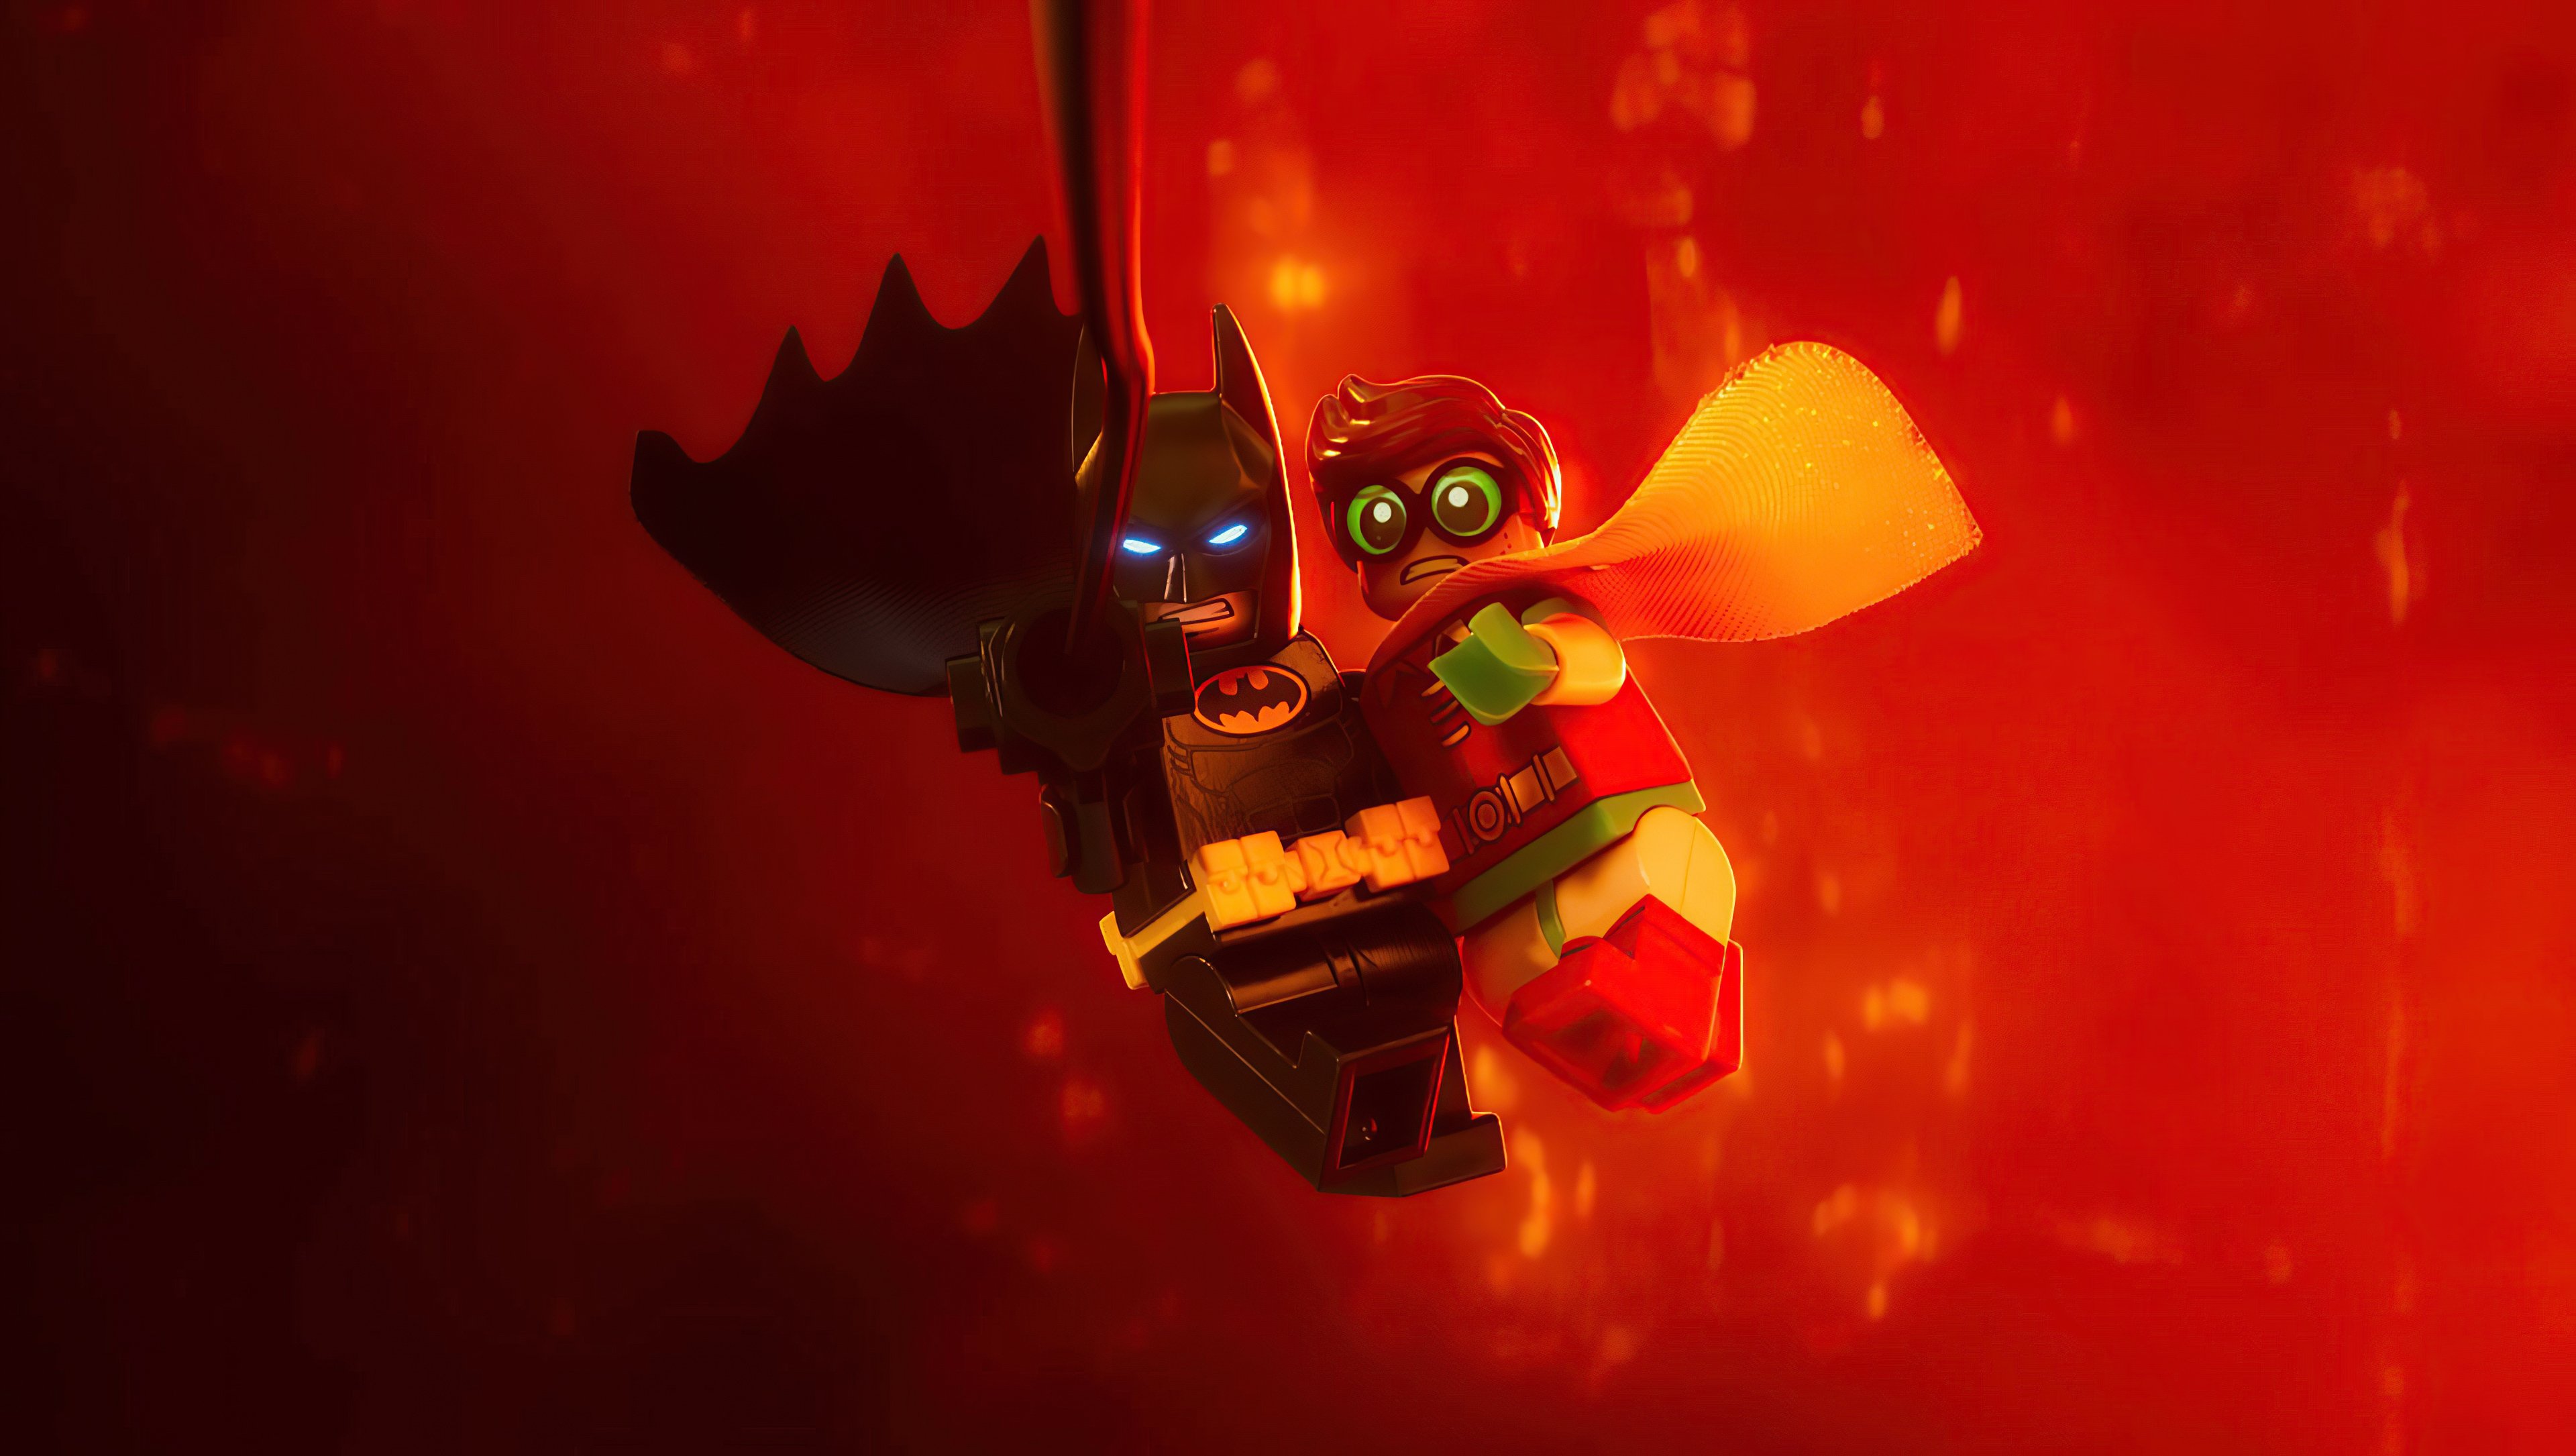 Fondos de pantalla Batman y Robin estilo Lego